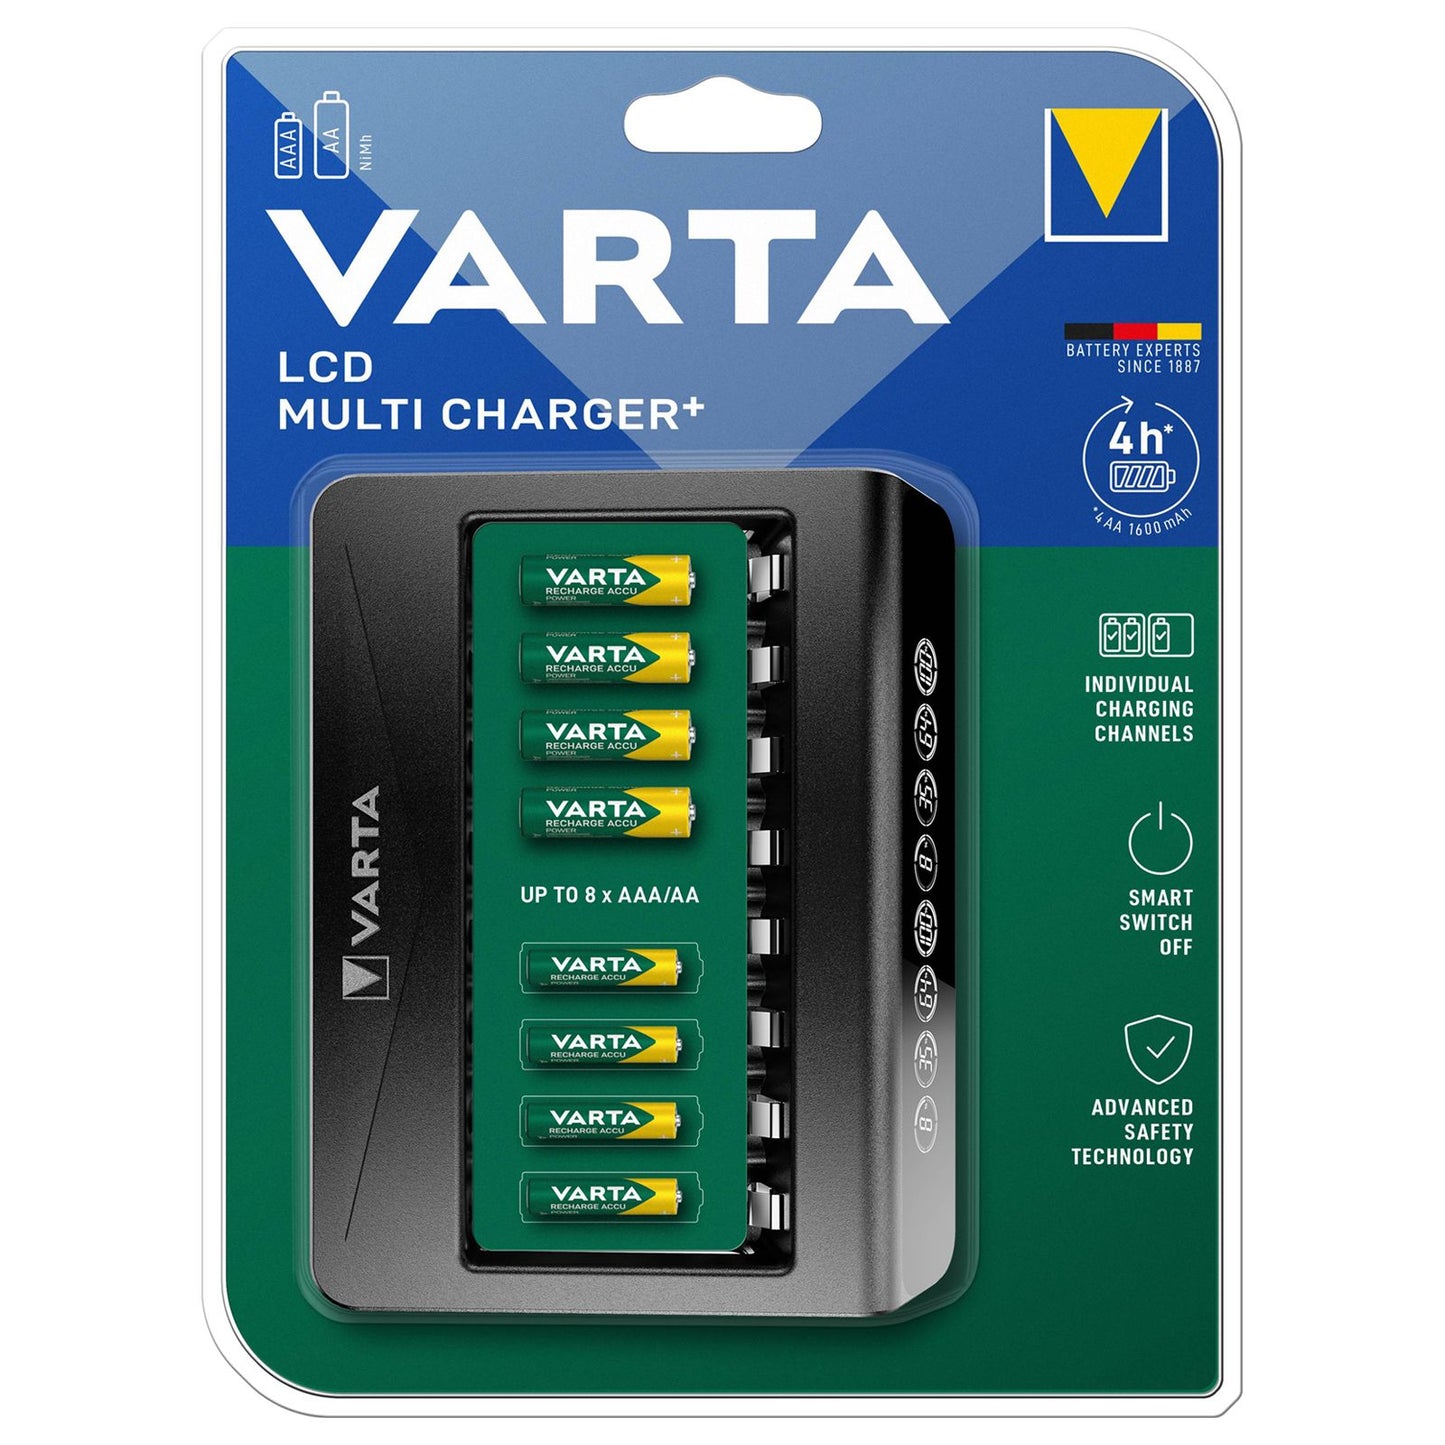 Chargeur Varta pour AA et AAA, 8 emplacements, charge les piles AA et AA en 4 heures, écran LCD avec pourcentage de charge